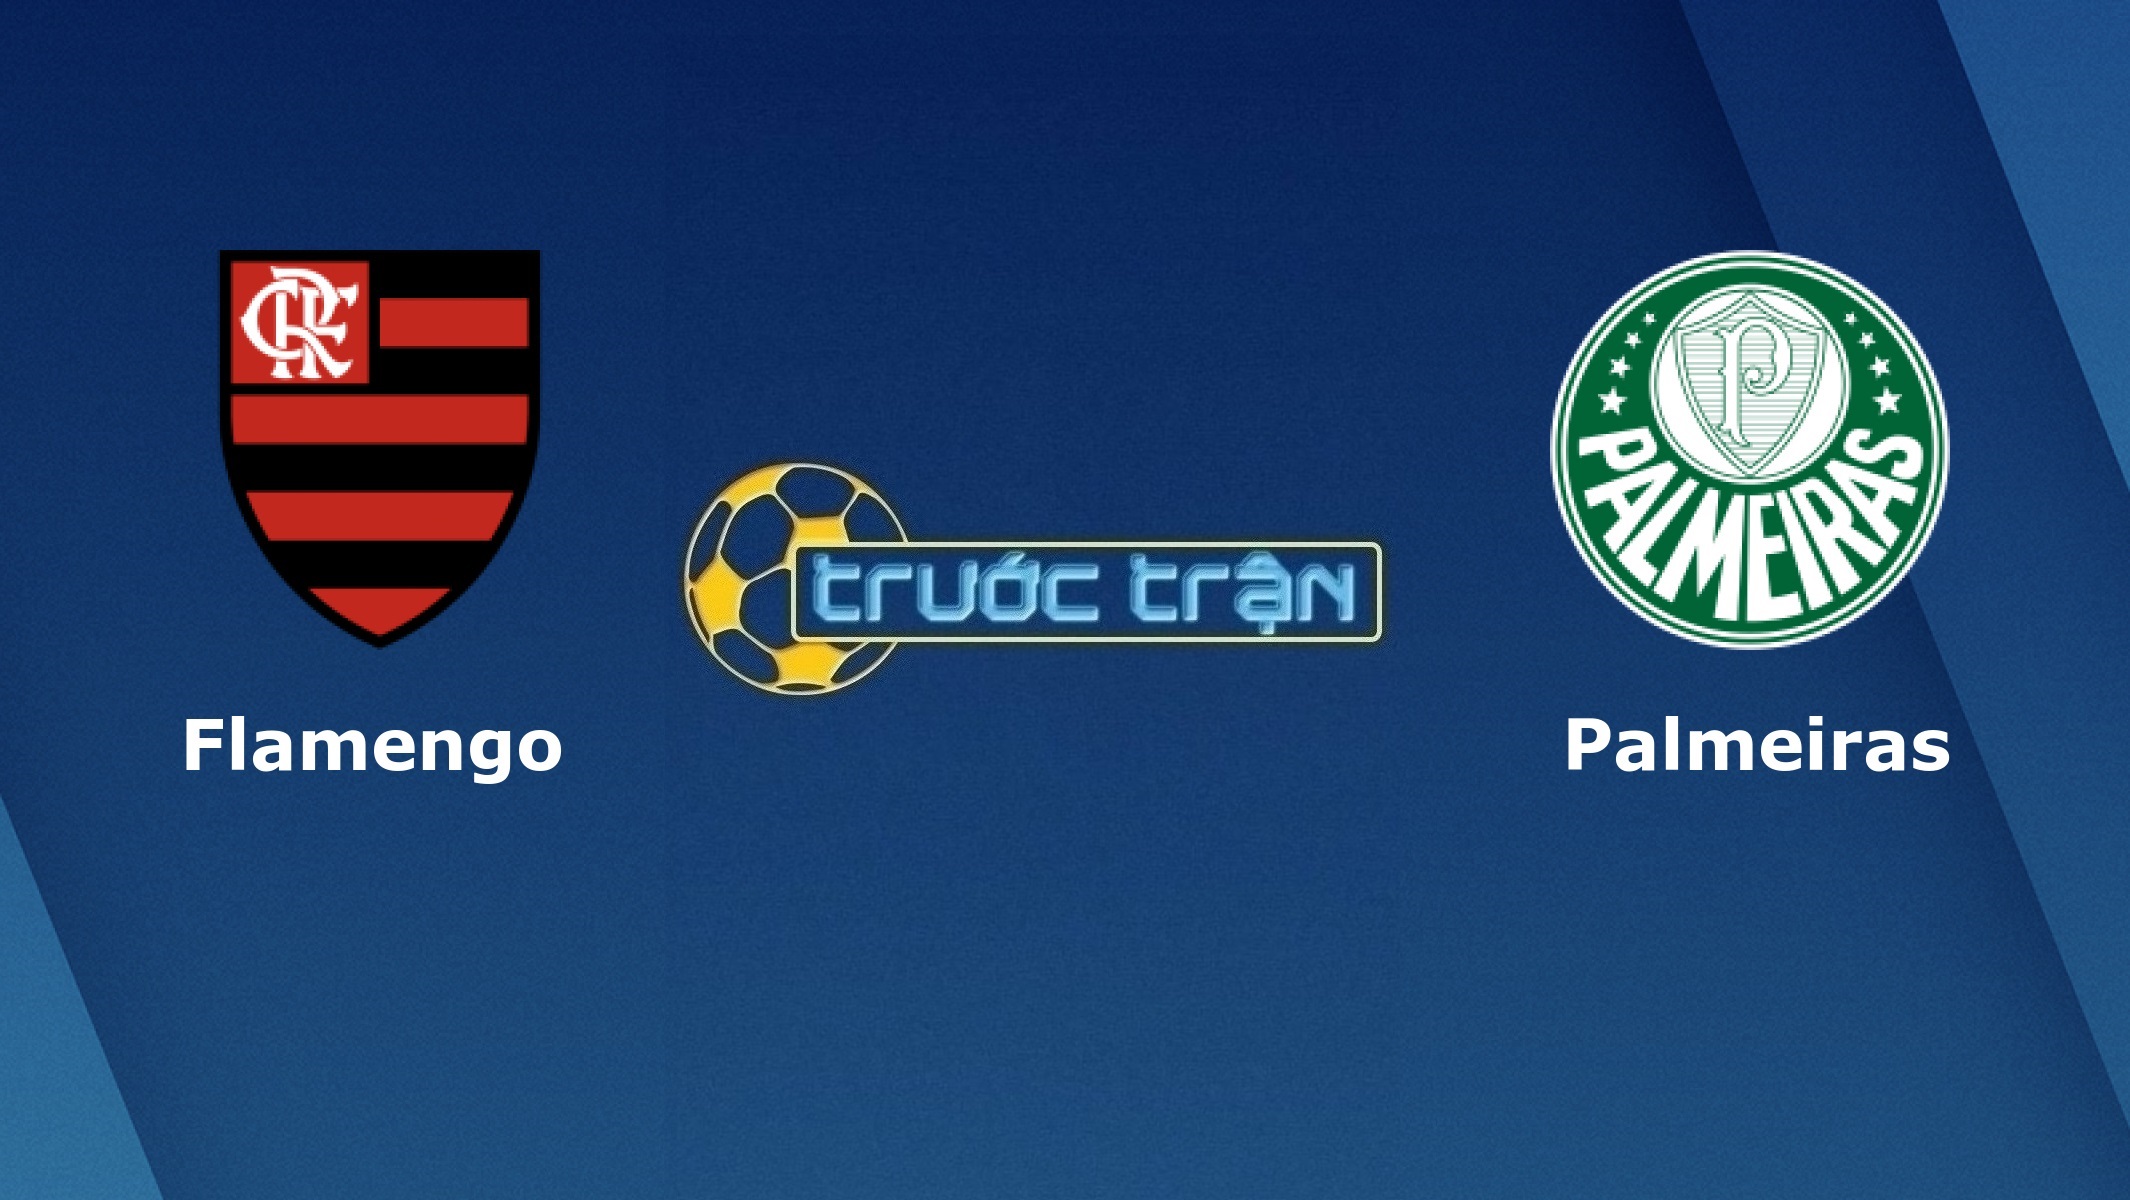 Flamengo vs Palmeiras – Tip kèo bóng đá hôm nay – 02h00 31/05/2021